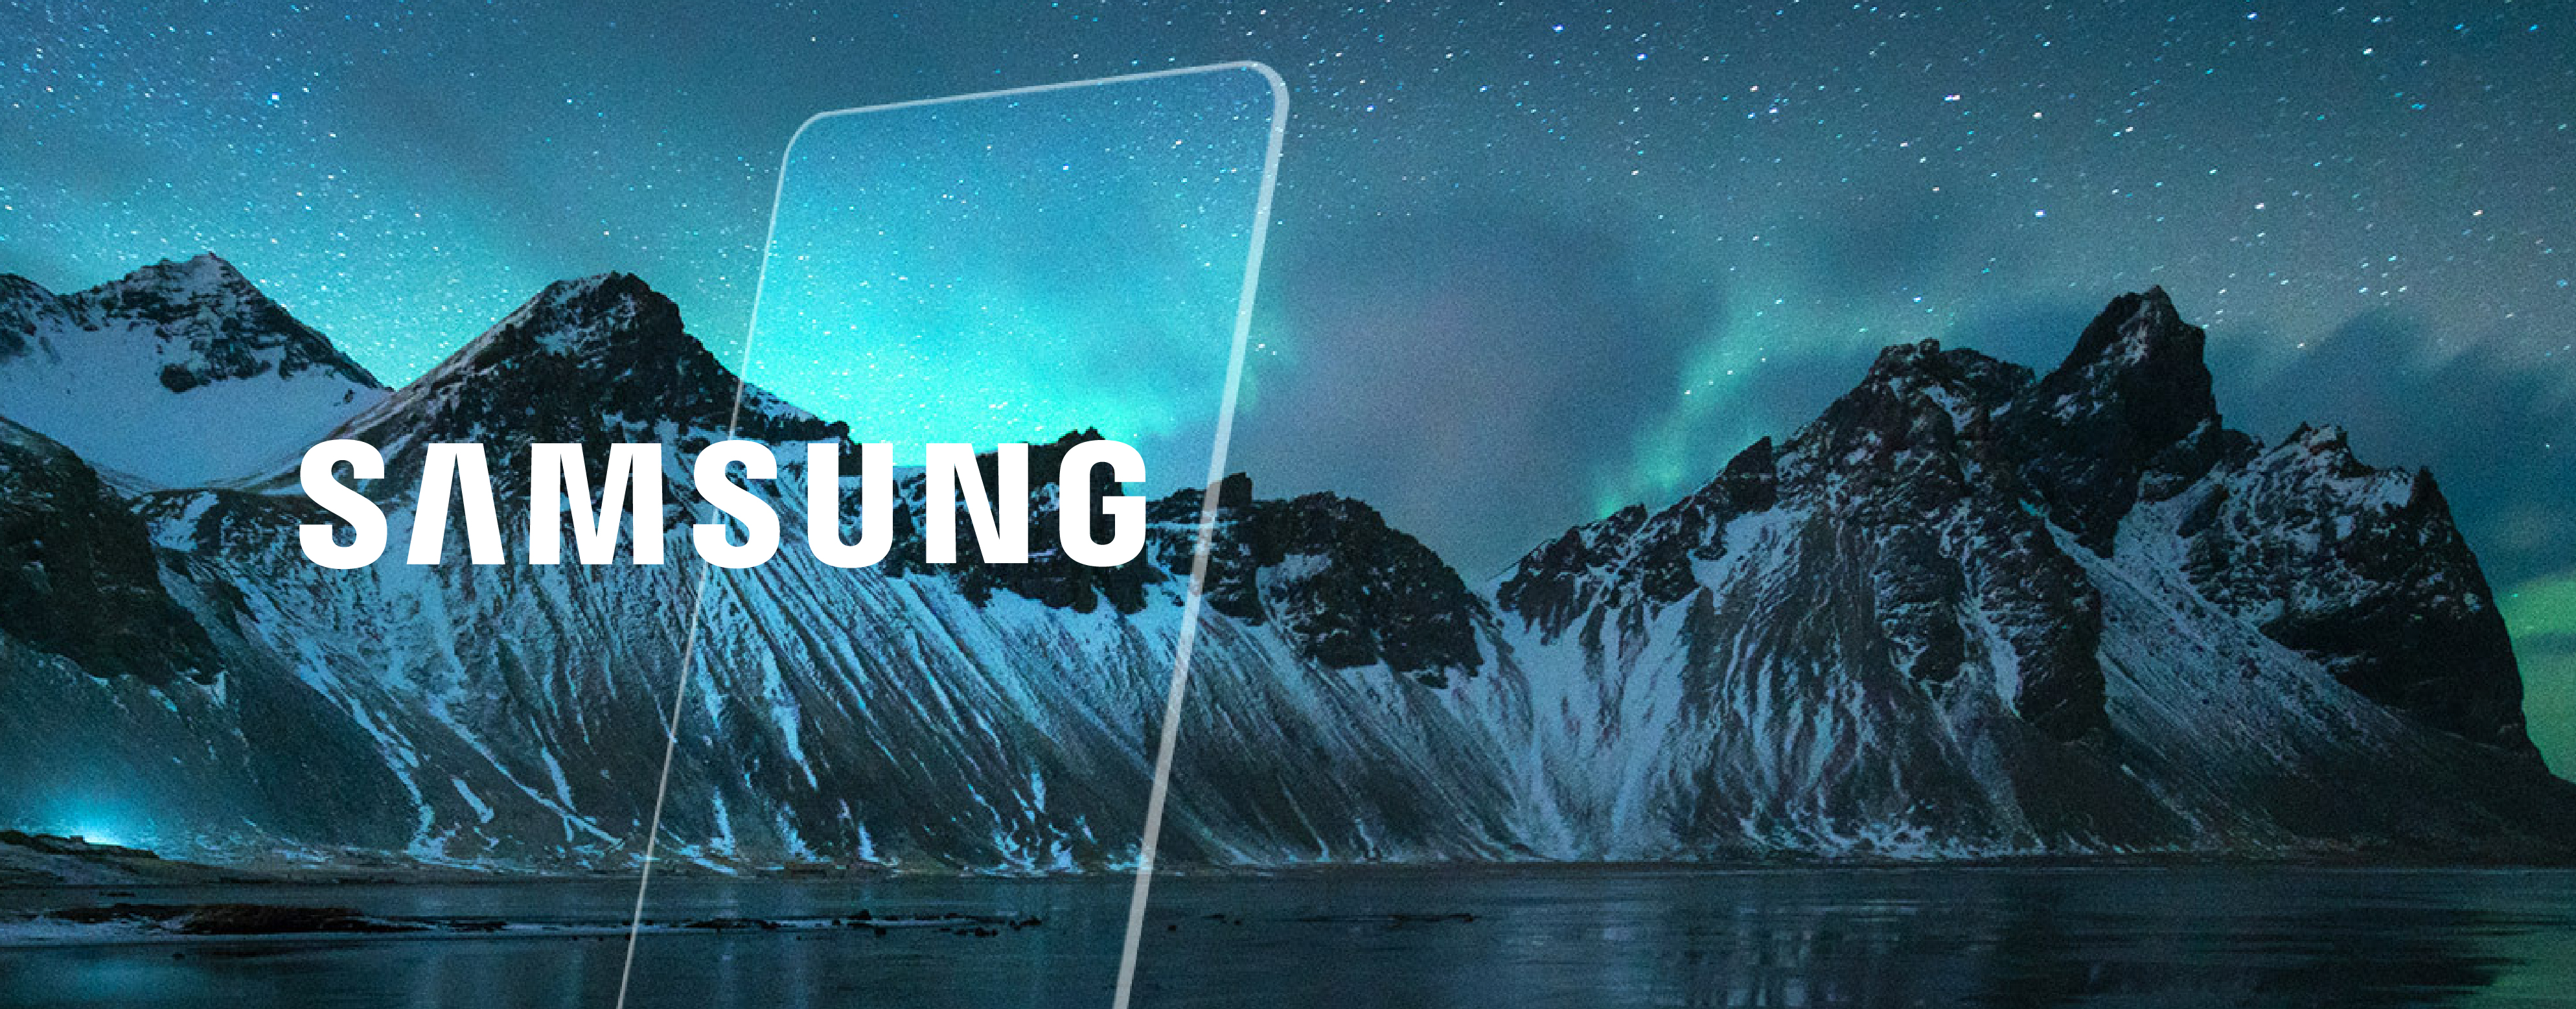 Samsung Display - Drizzlin